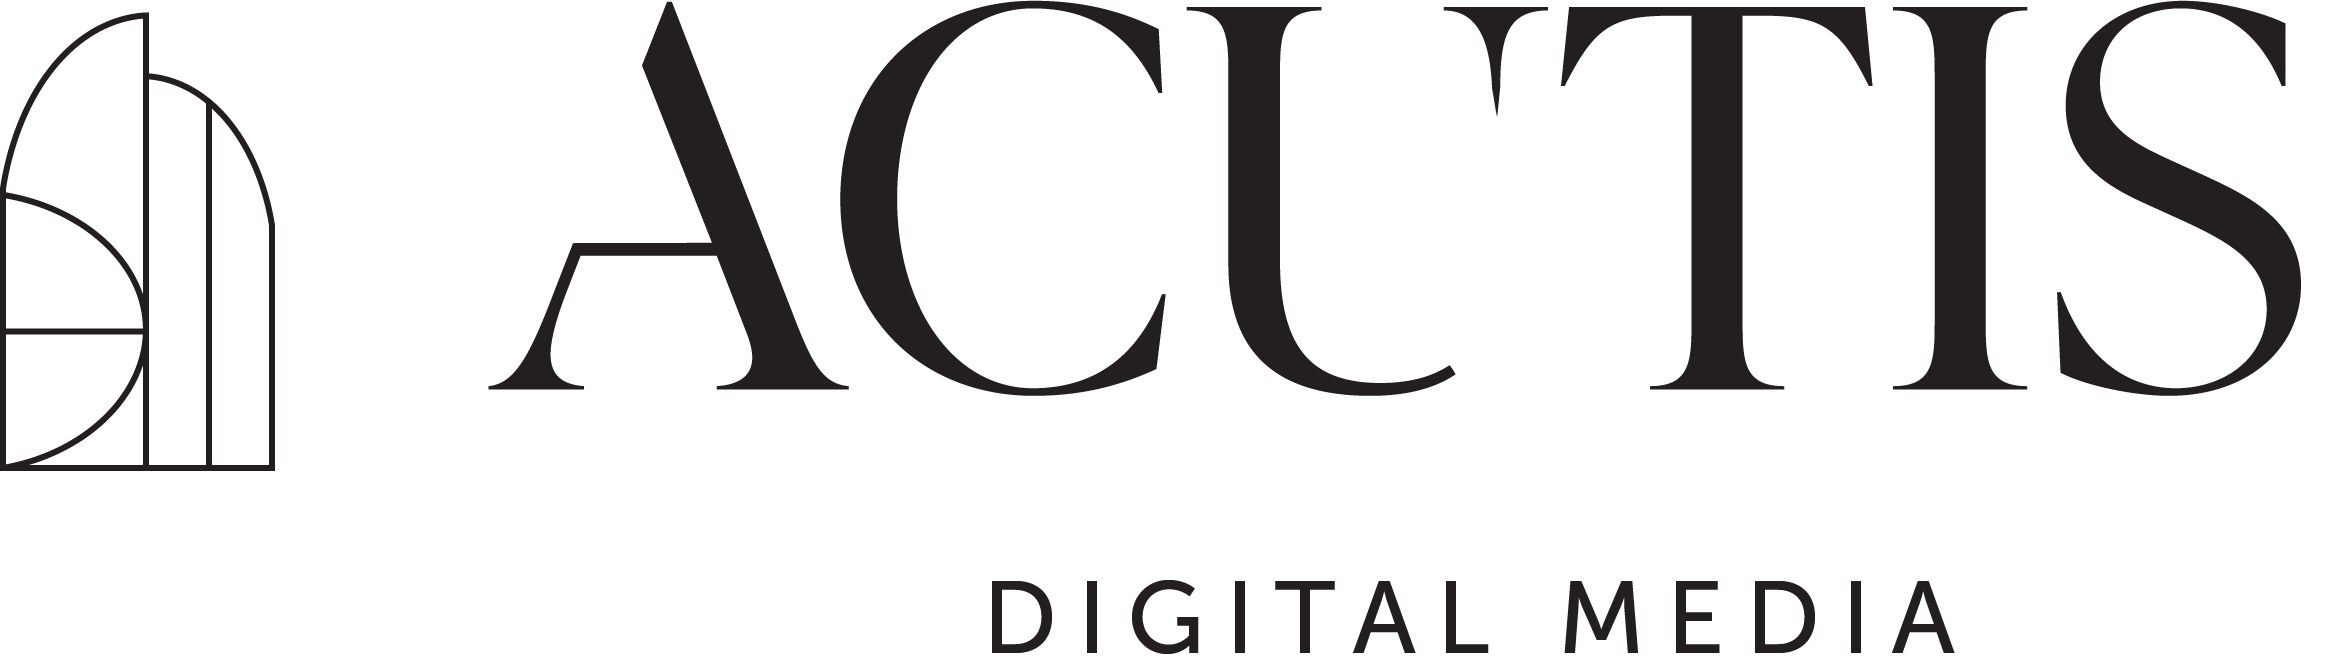 Acutis Digital Media